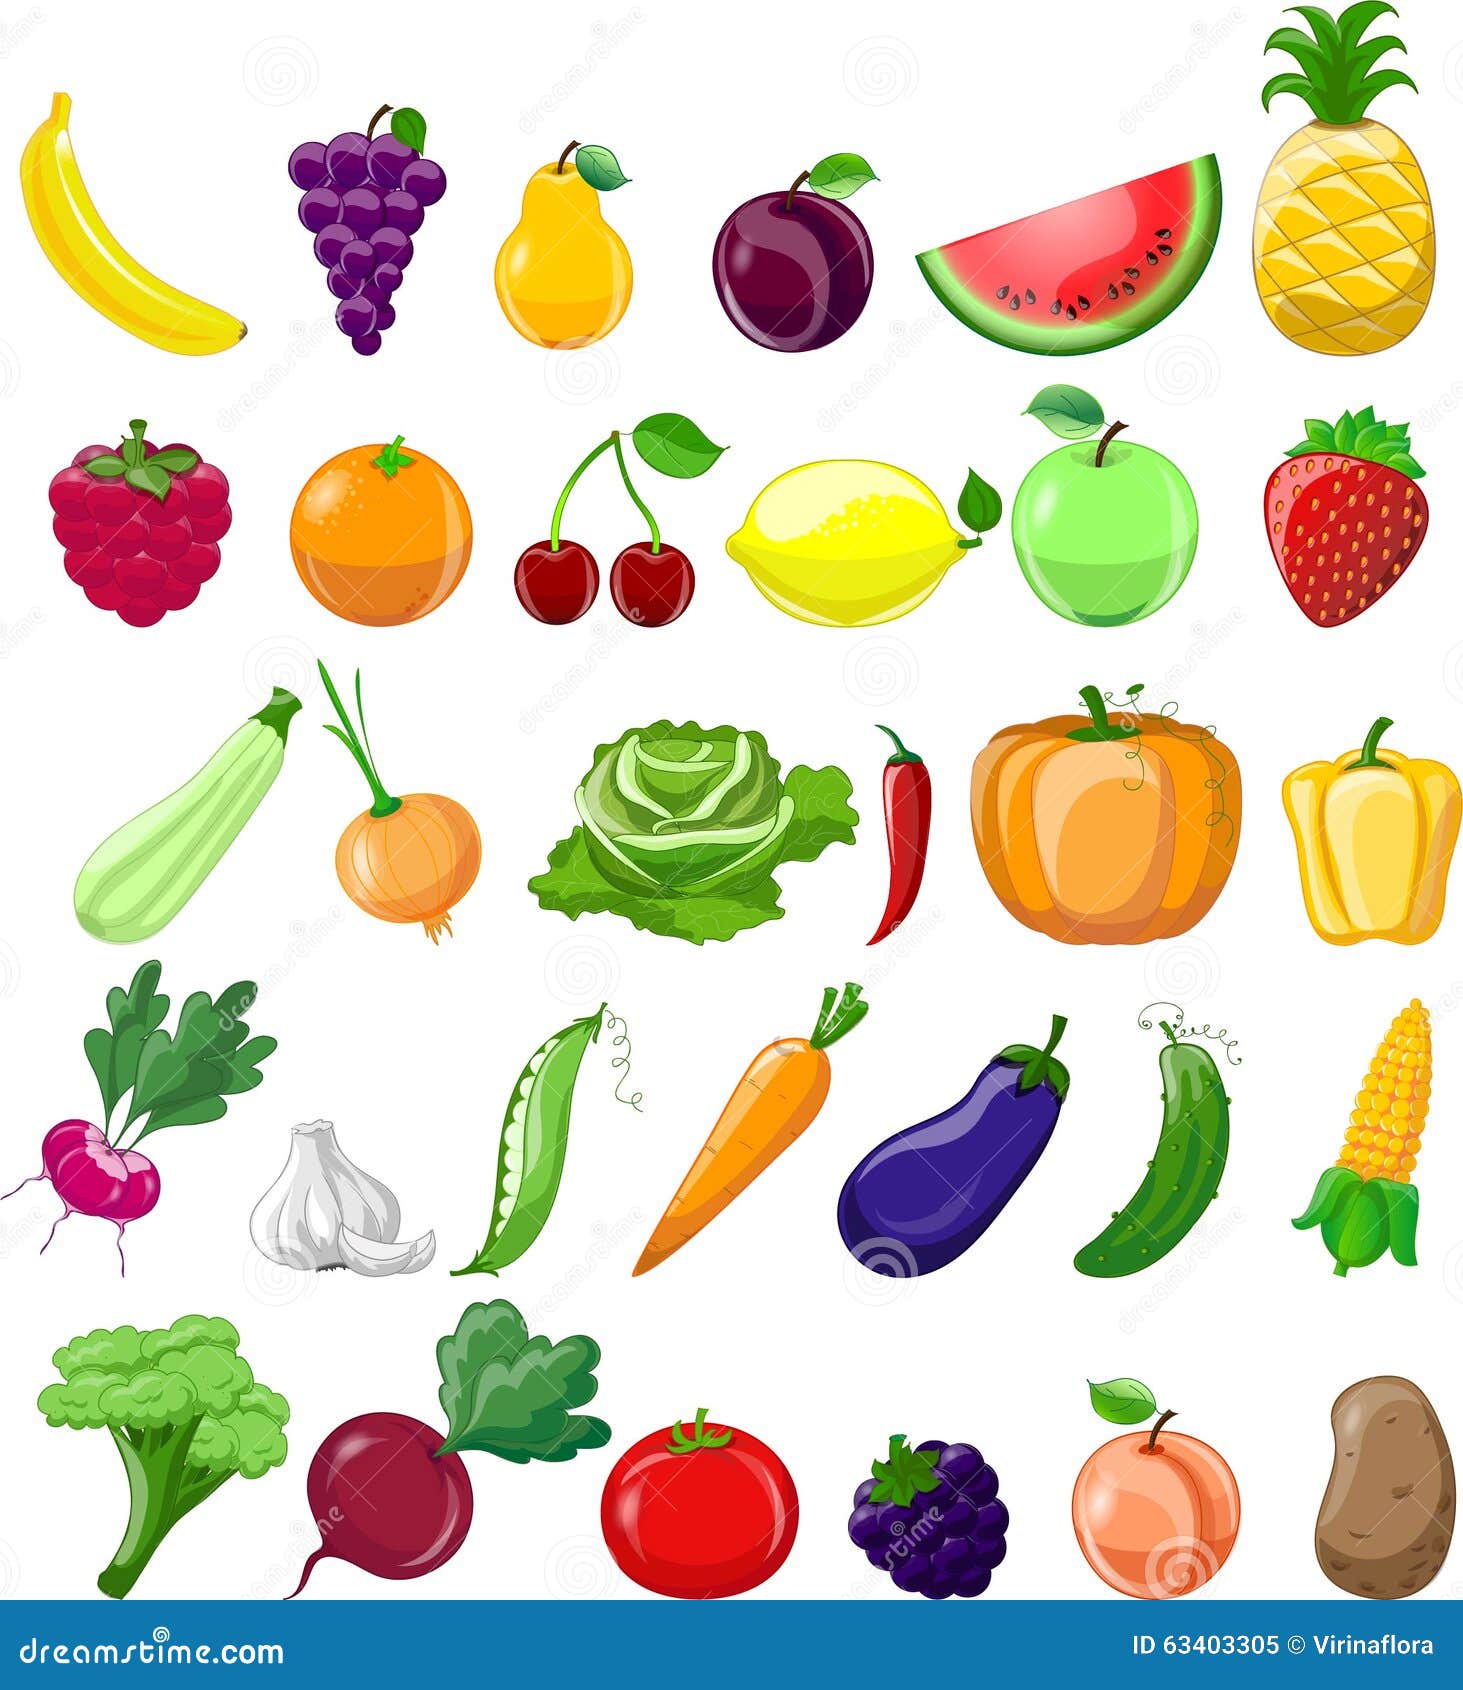 Cartoon Vegetables Stock Illustrations – 65,440 Cartoon Vegetables Stock  Illustrations, Vectors & Clipart - Dreamstime